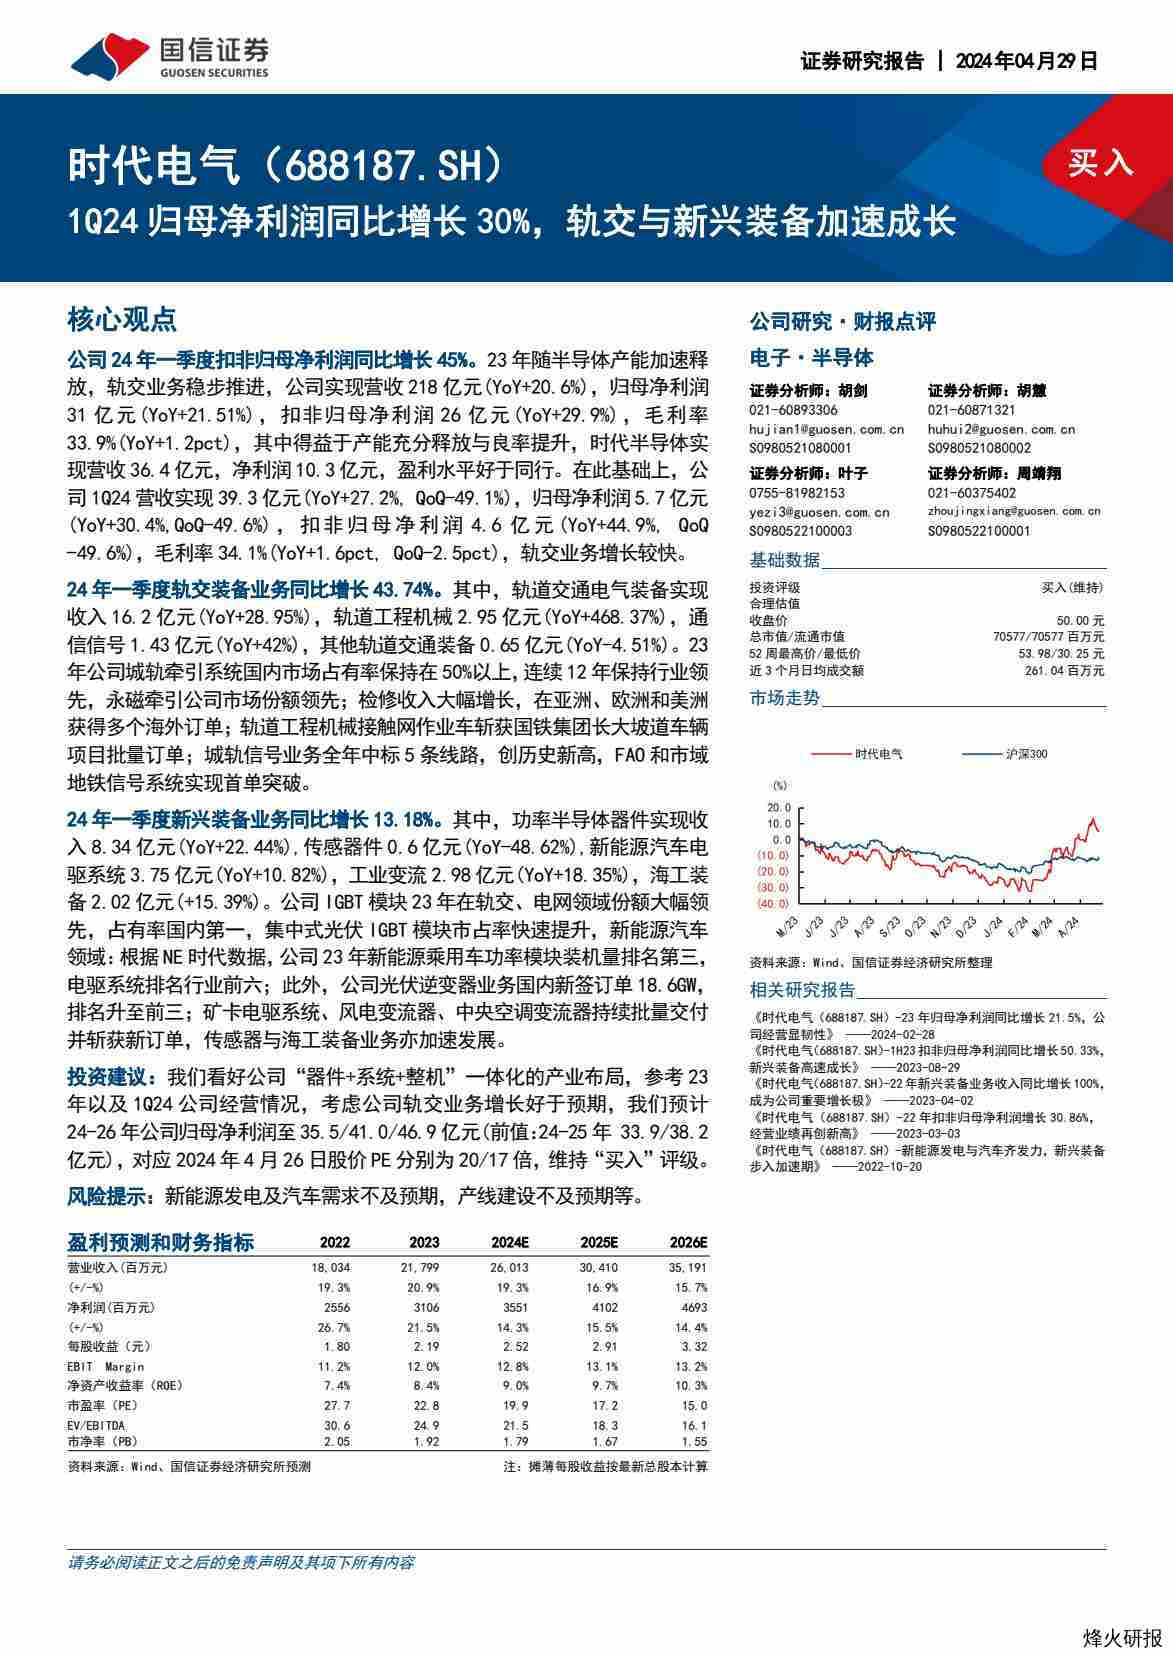 【国信证券】1Q24归母净利润同比增长30%，轨交与新兴装备加速成长.pdf-第一页